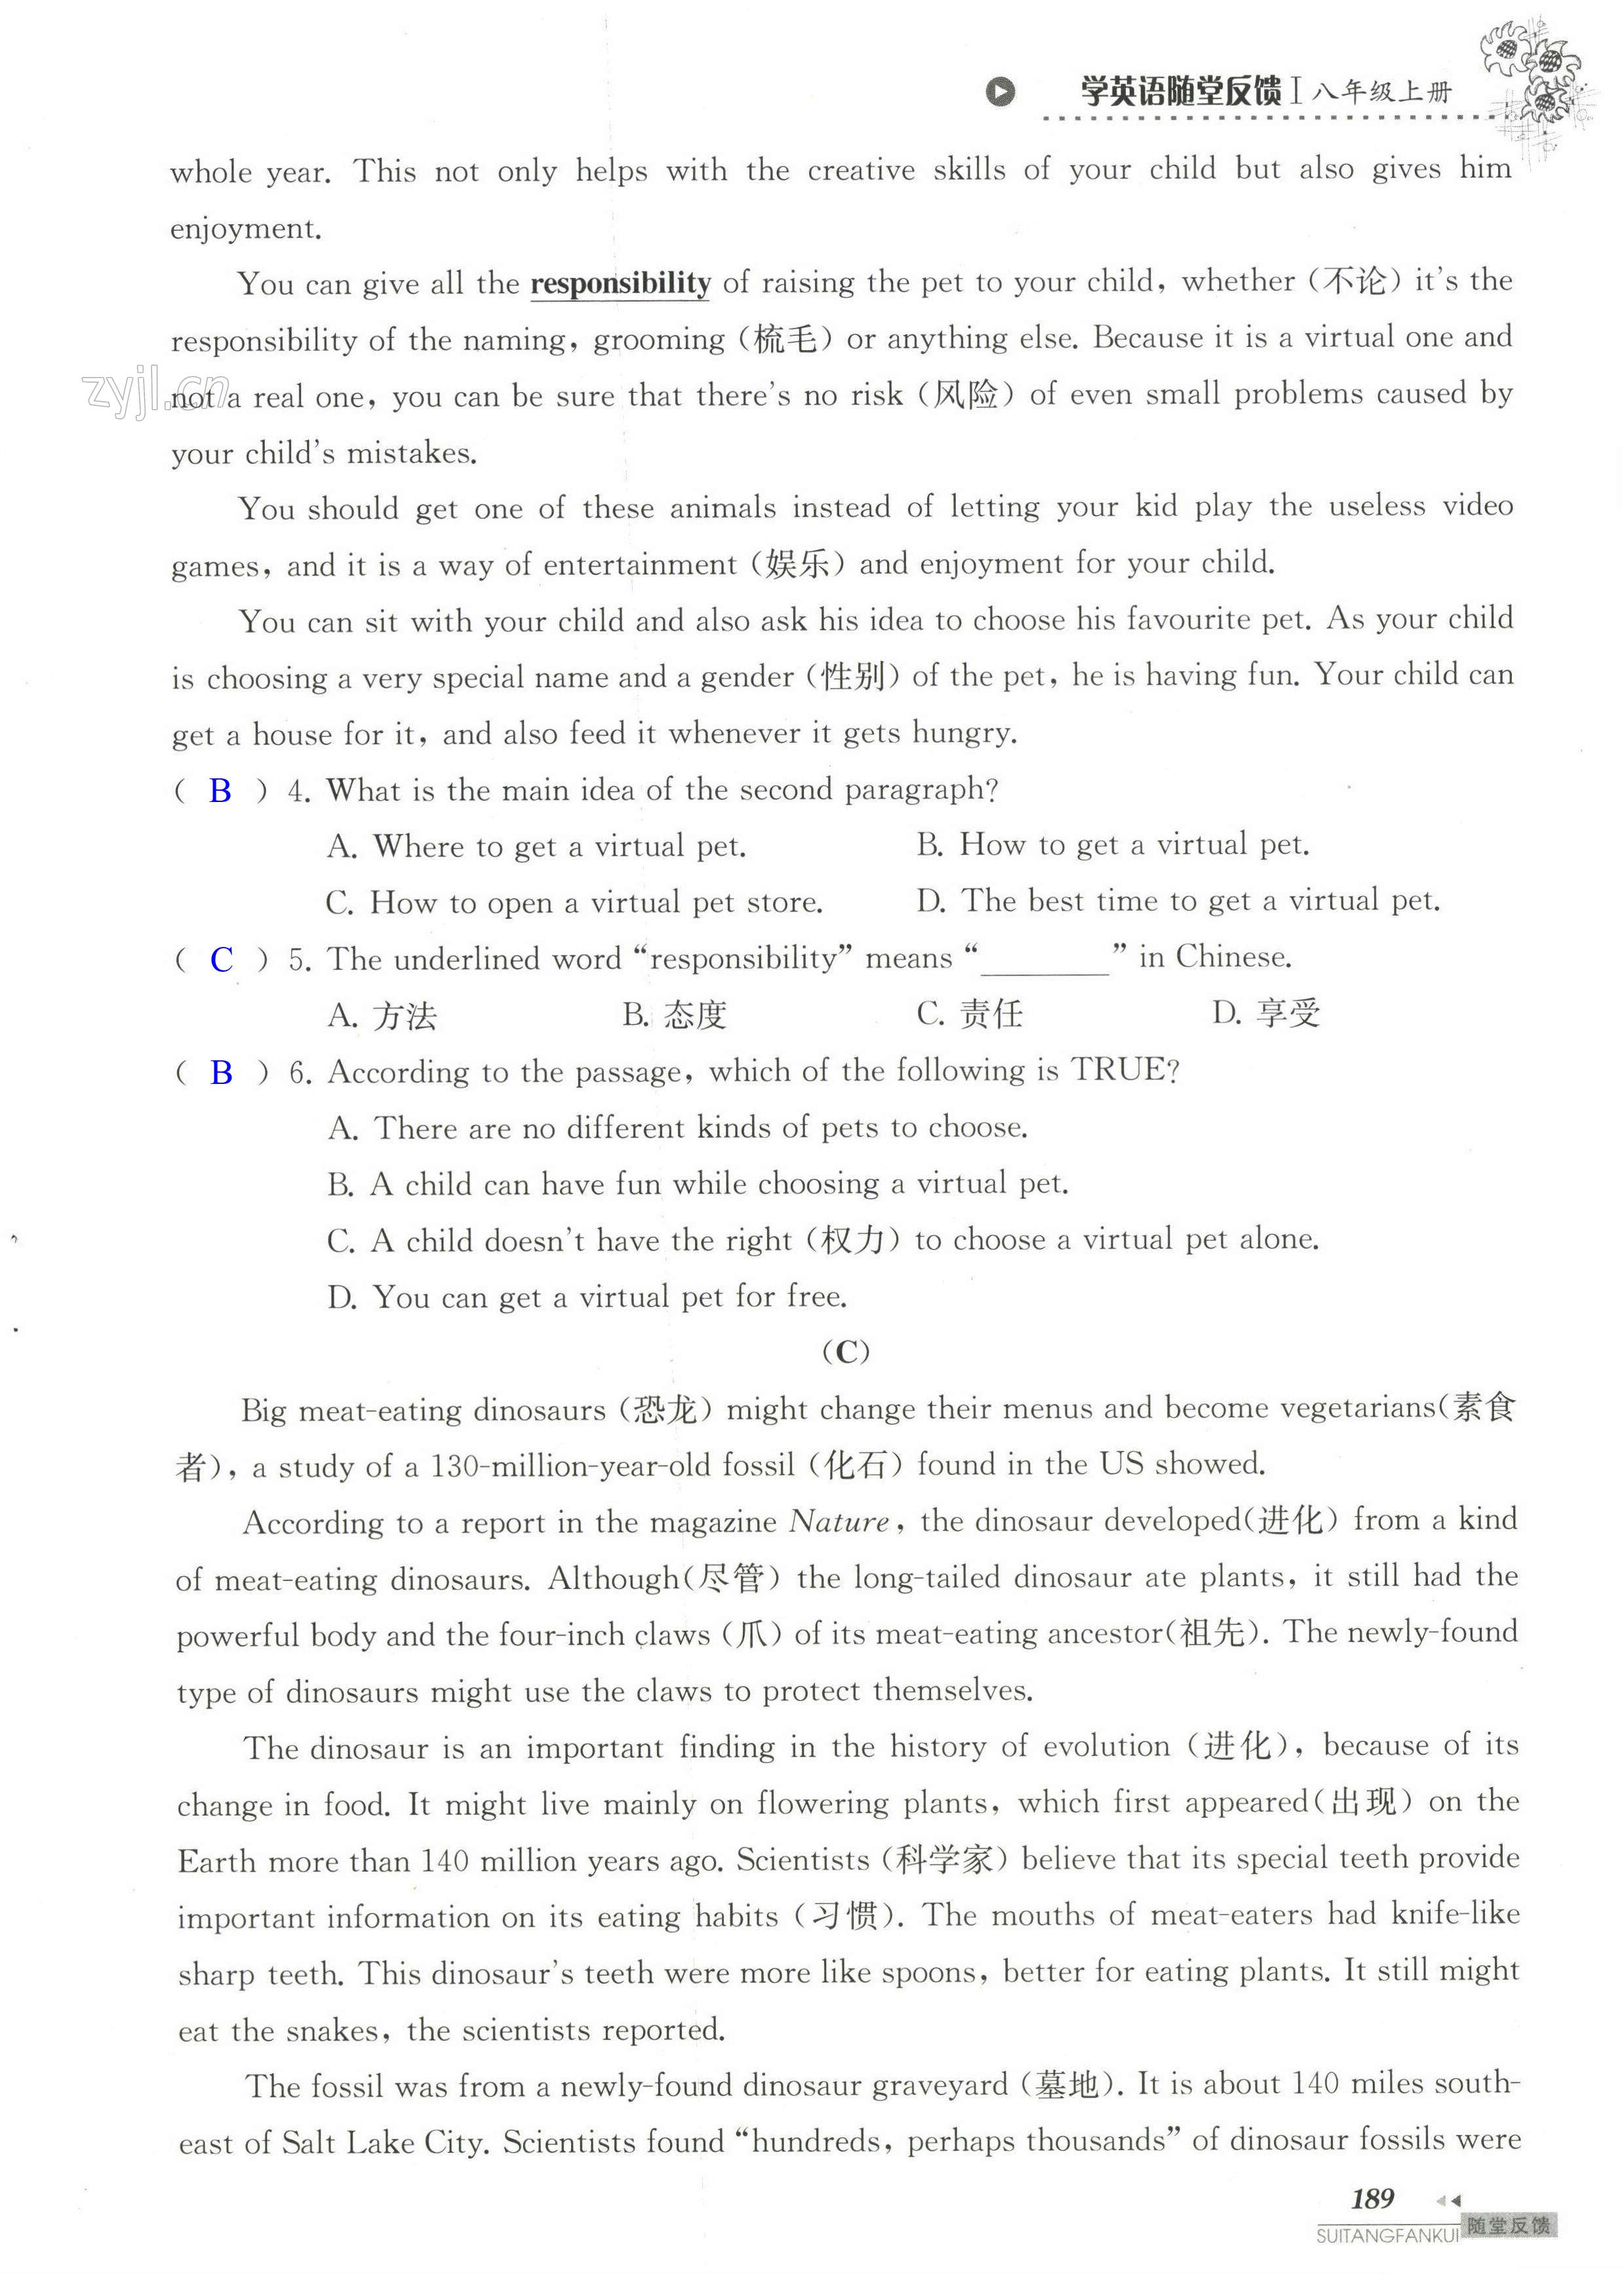 单元综合测试卷 Test for Unit 5 of 8A - 第189页